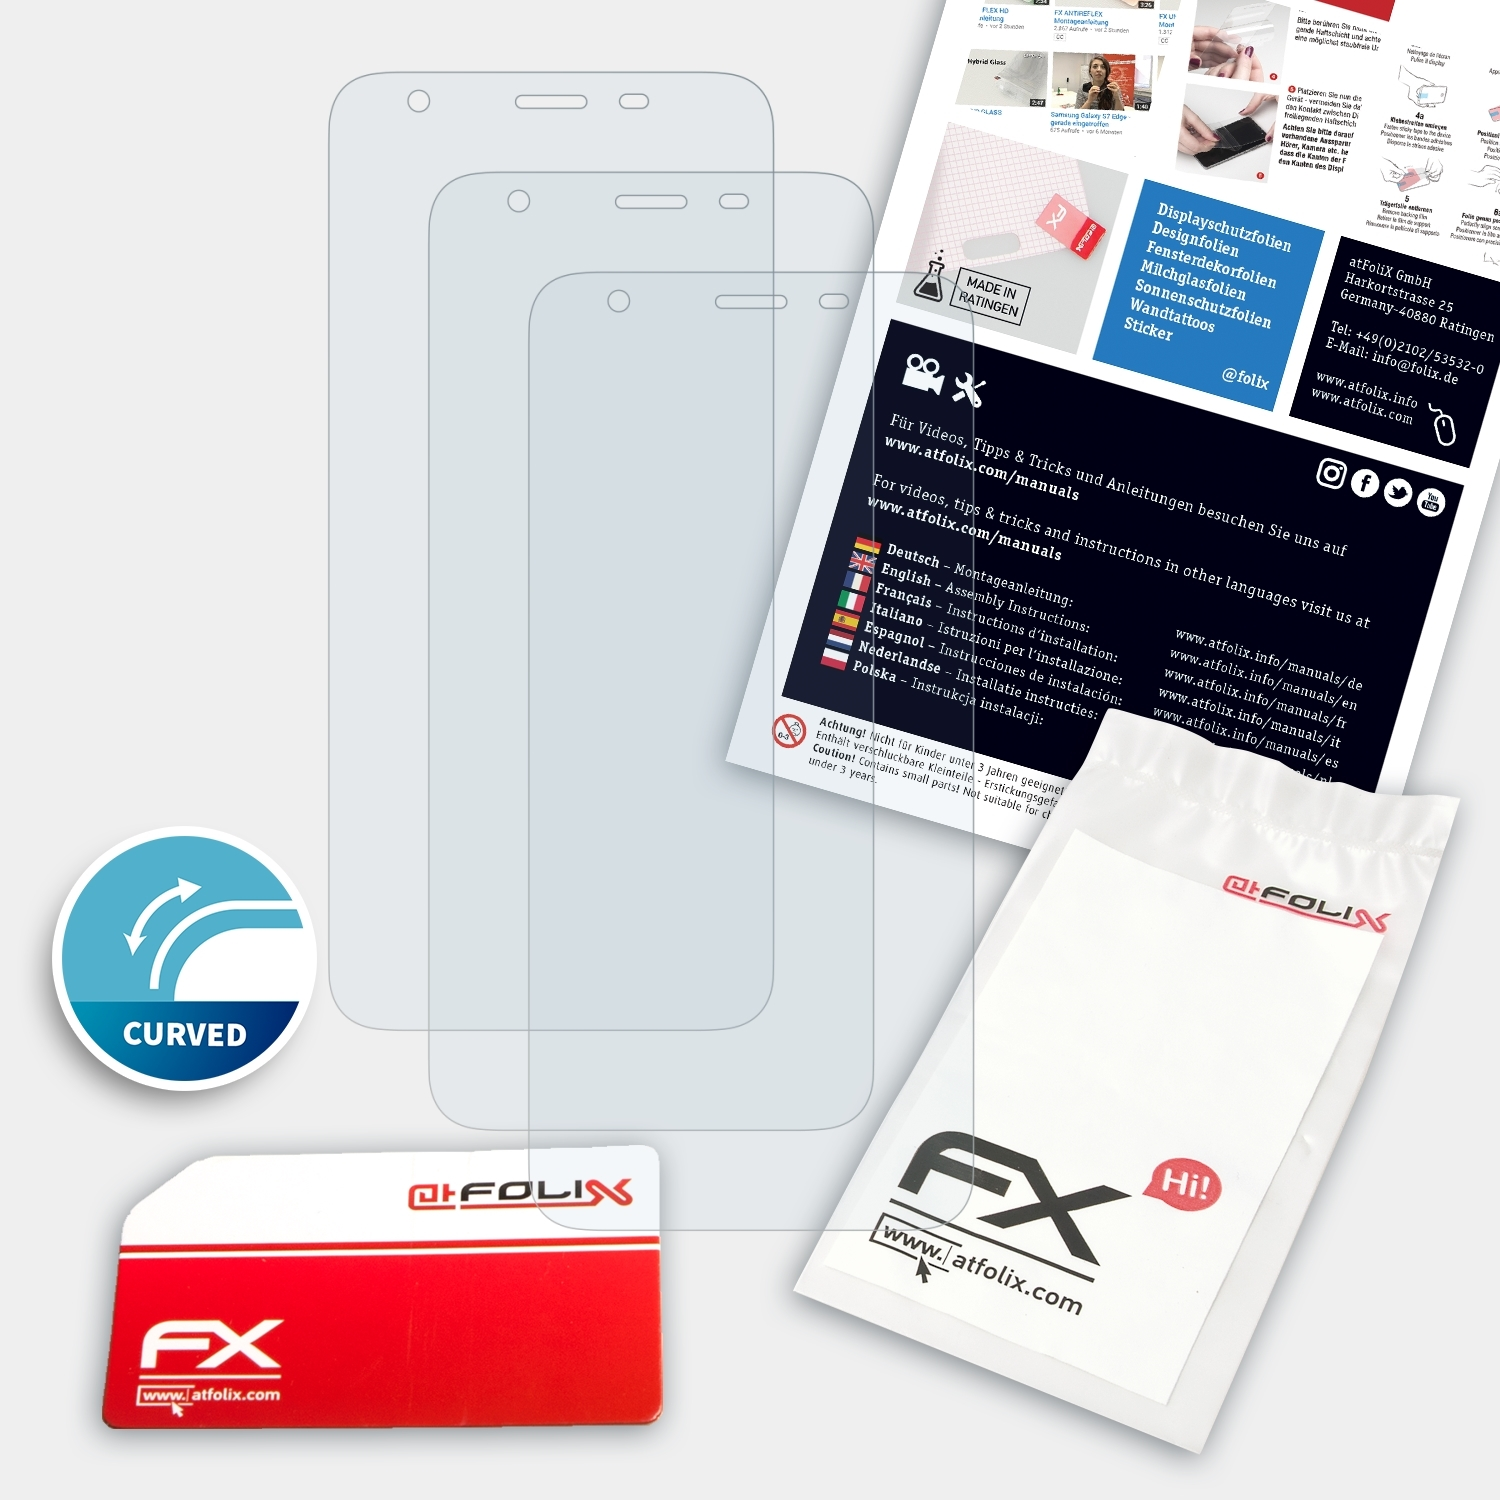 Displayschutz(für FX-ActiFleX Ulefone Pro) S9 ATFOLIX 3x